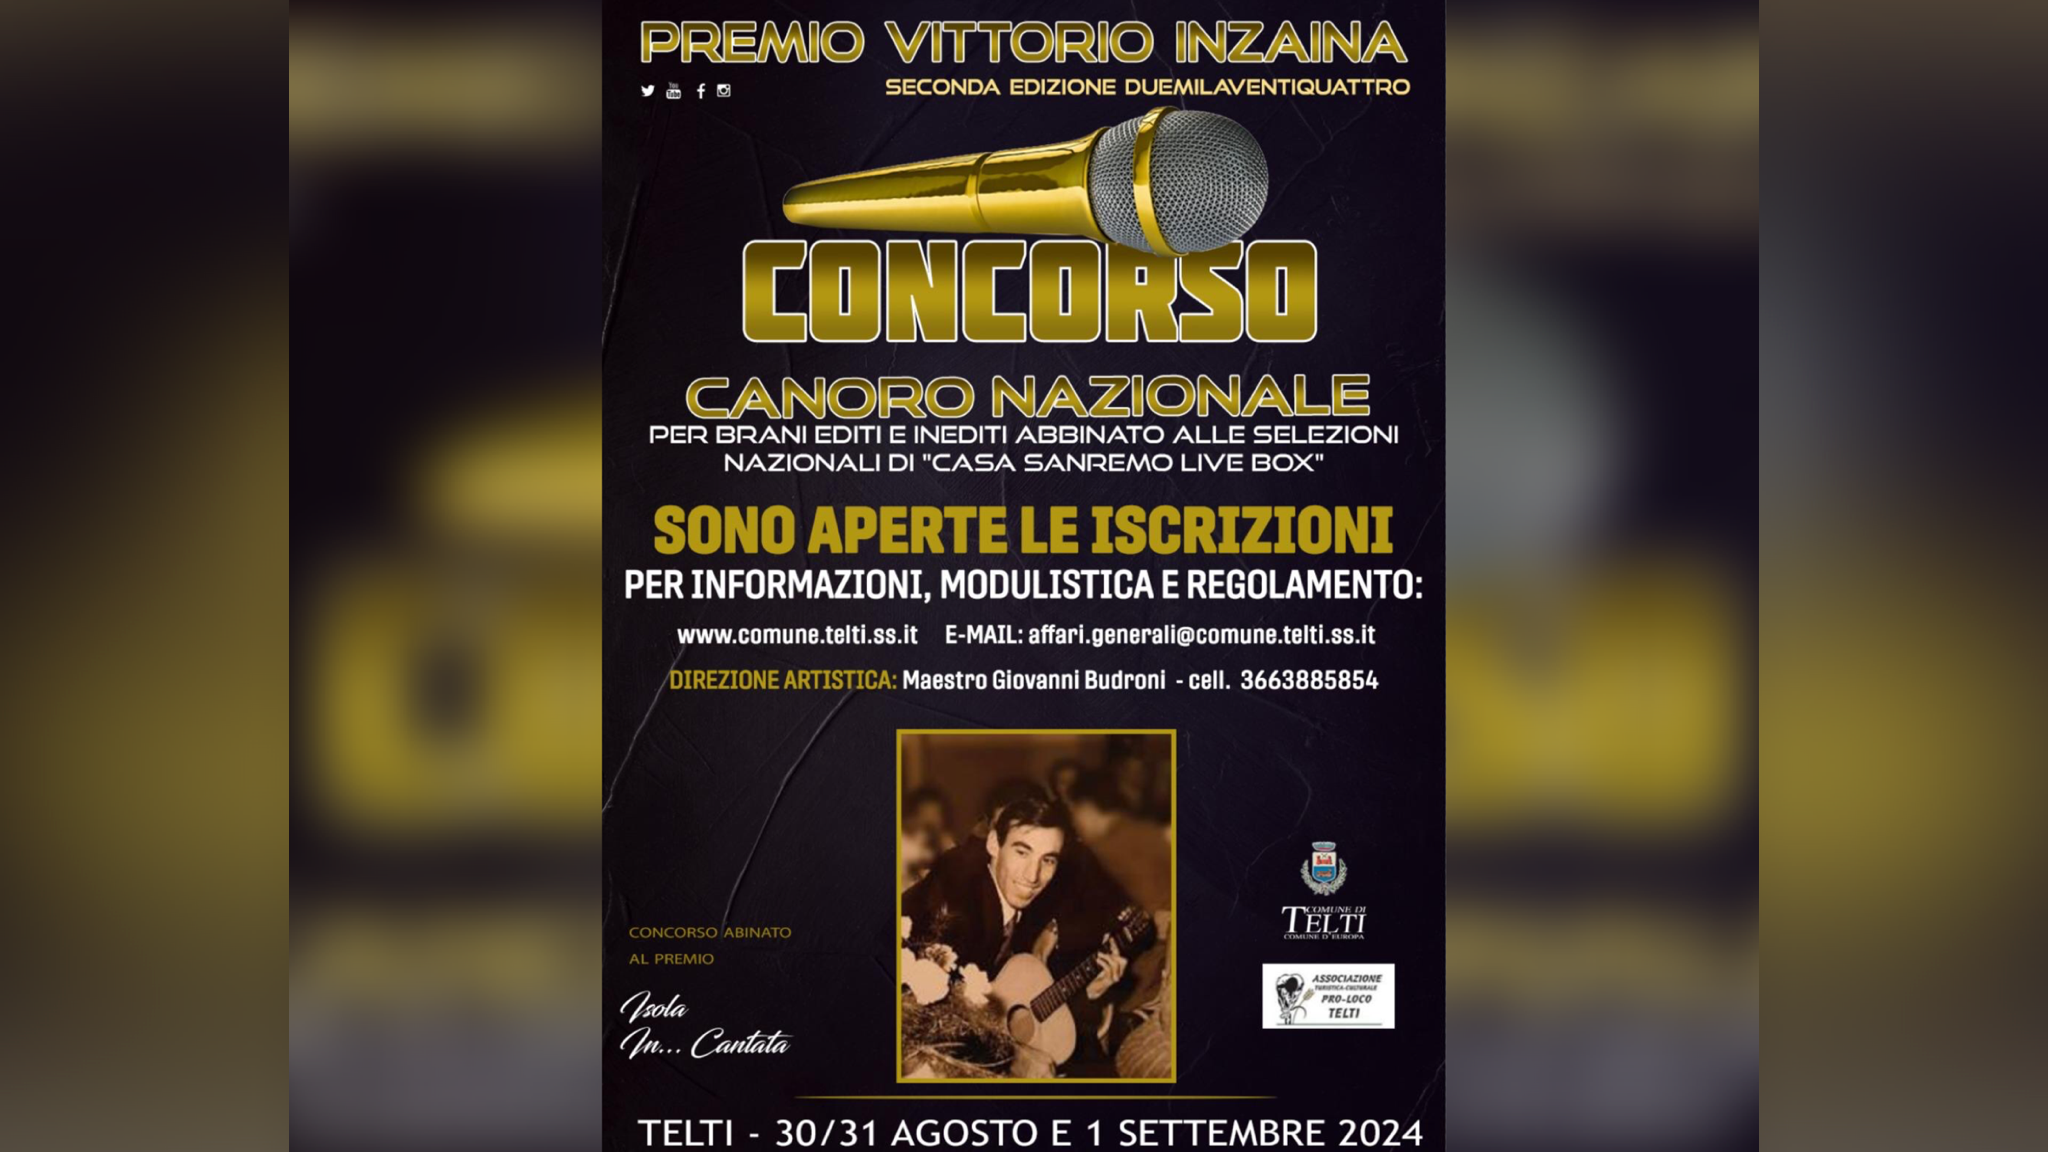 Telti, un concorso canoro per la selezione Casa Sanremo